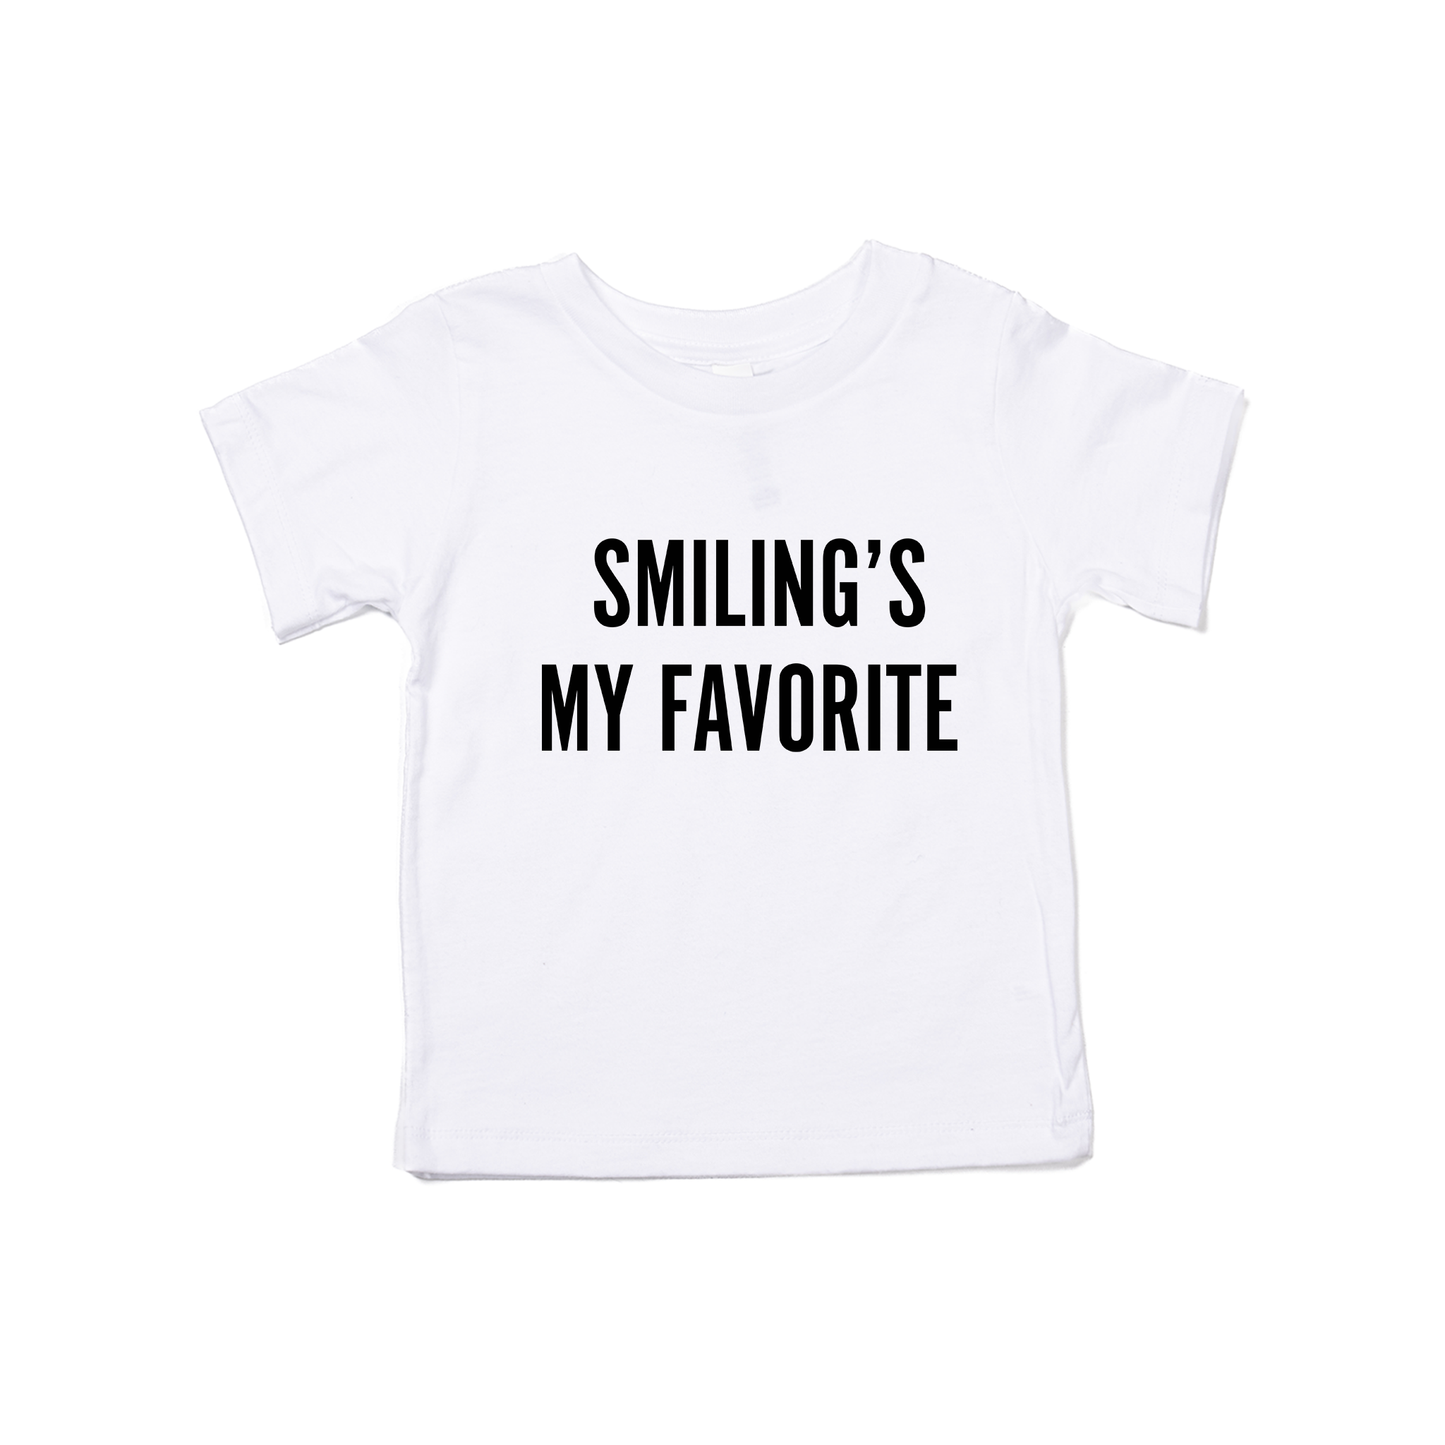 Smiling's My Favorite (Black) - Kids Tee (White)